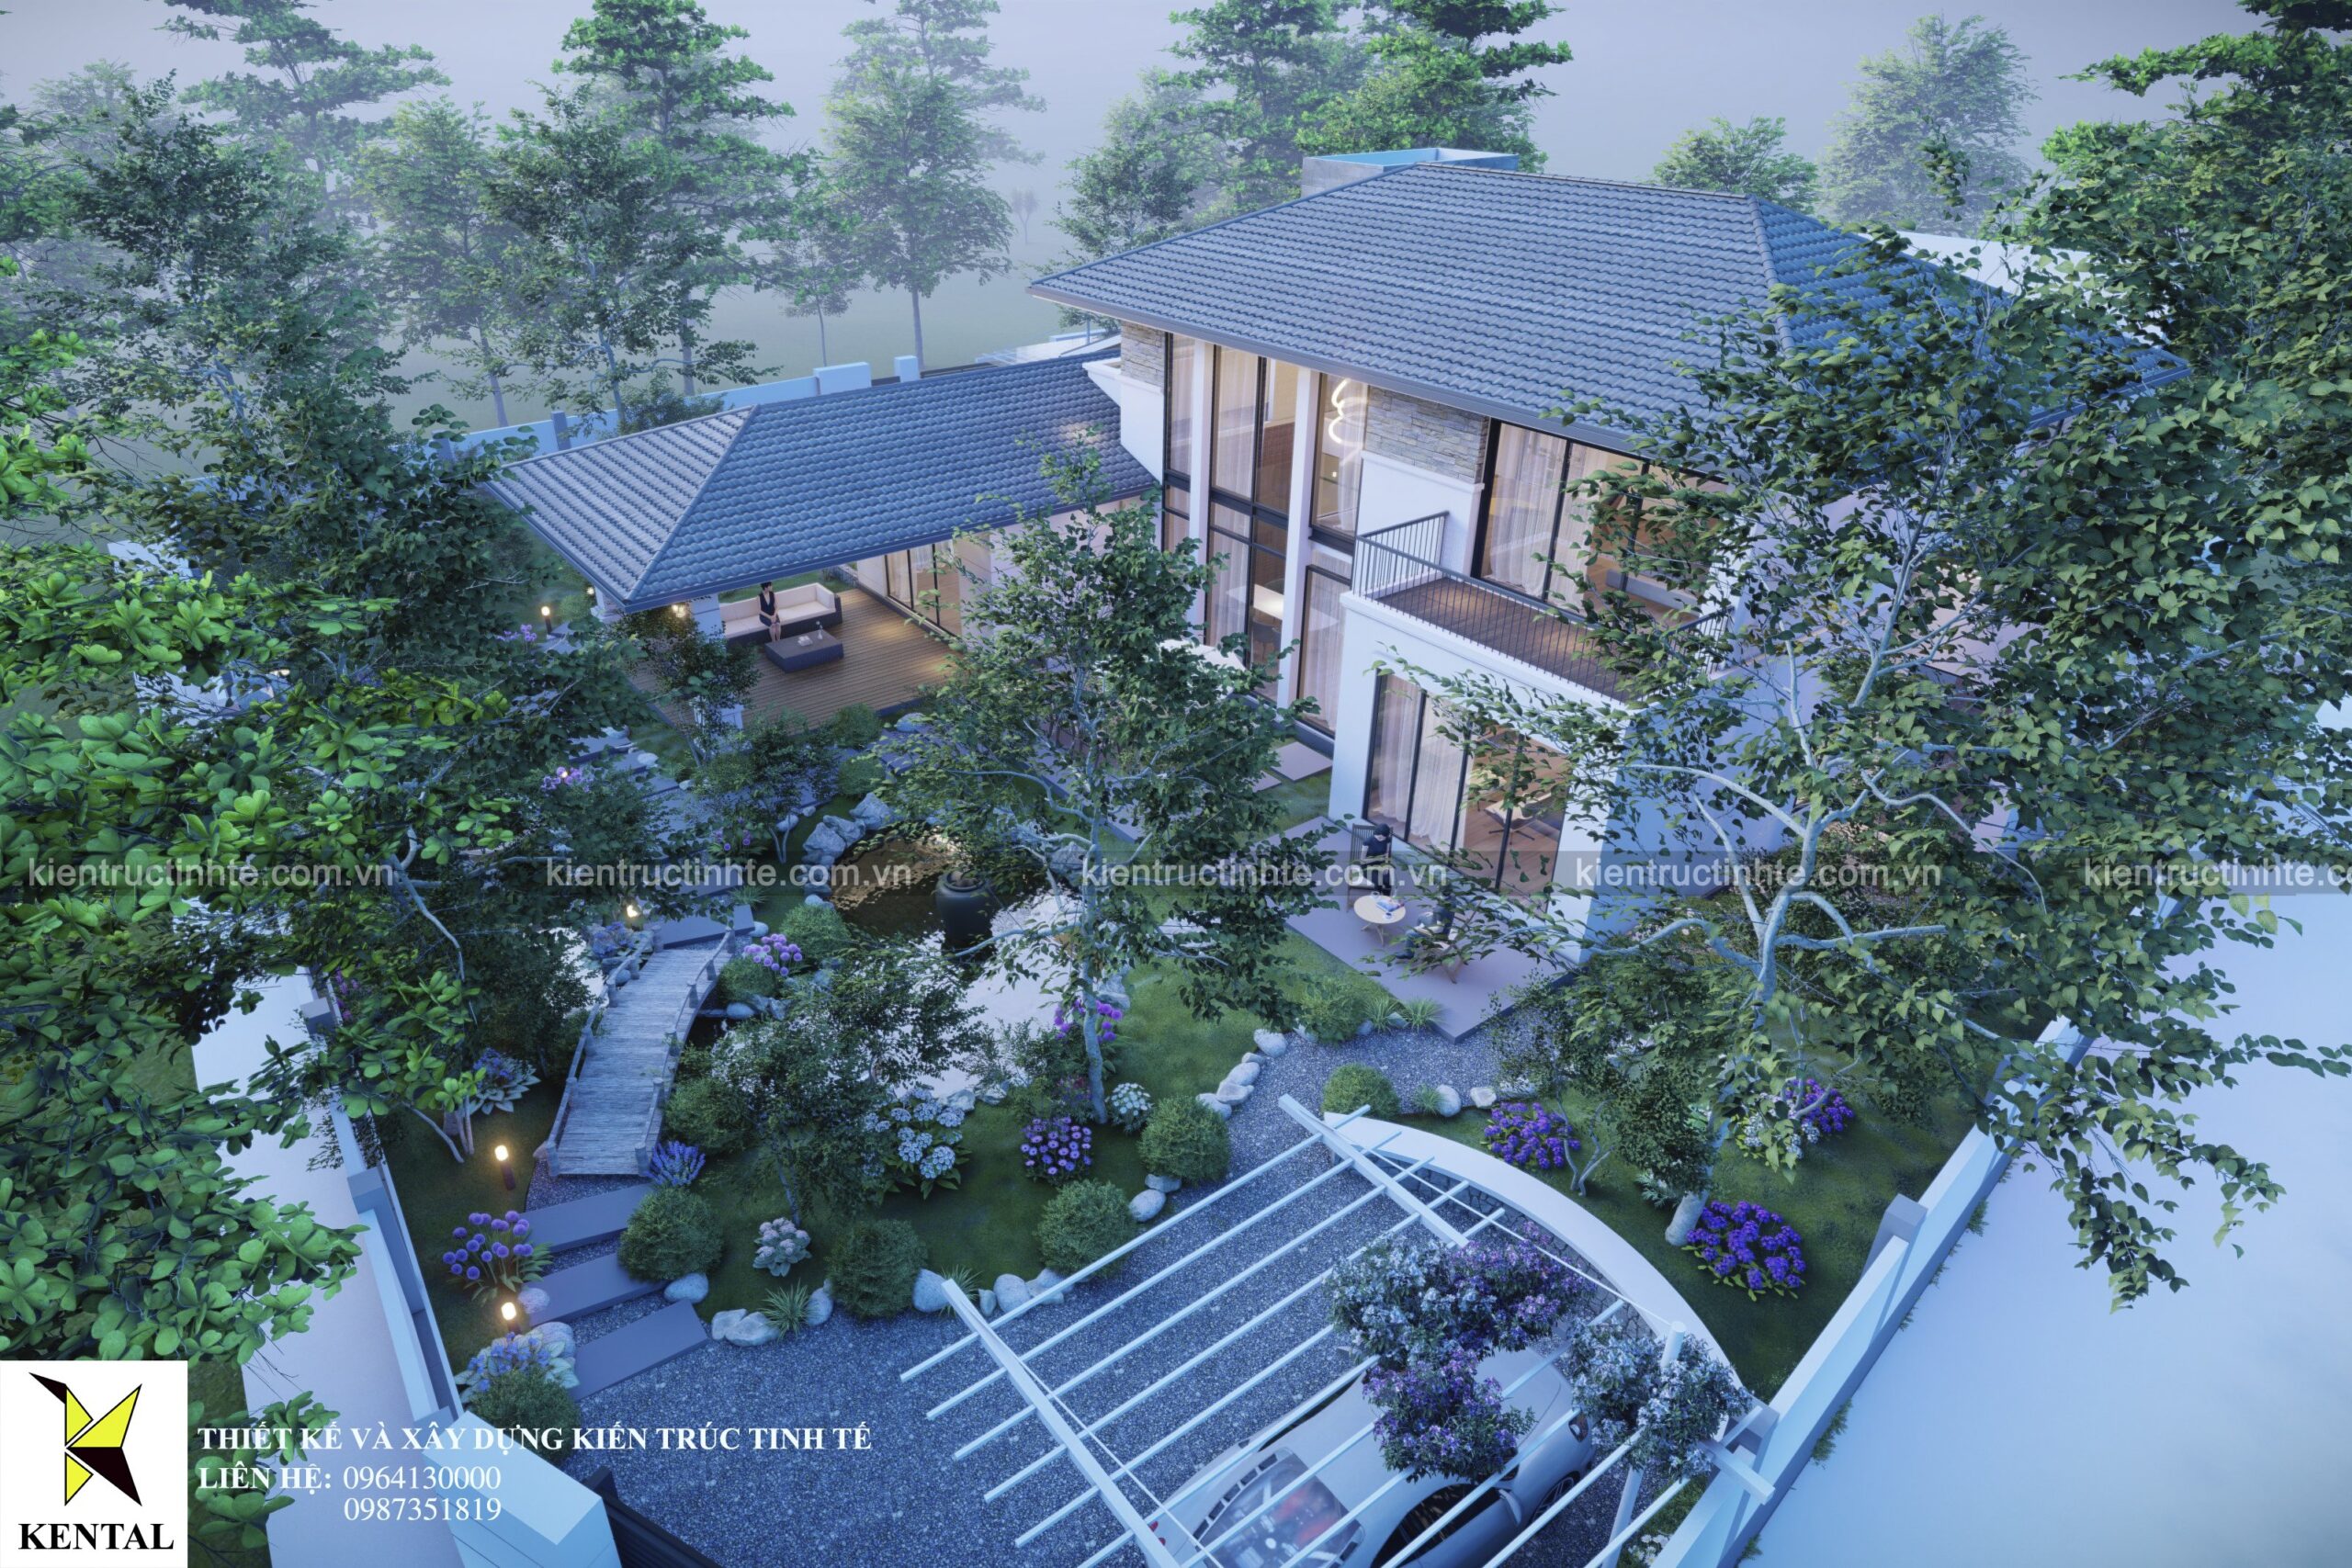 ​Thiết kế nội thất biệt thự 2 tầng – “Siêu phẩm” nghỉ dưỡng 5 sao tại Bắc Giang